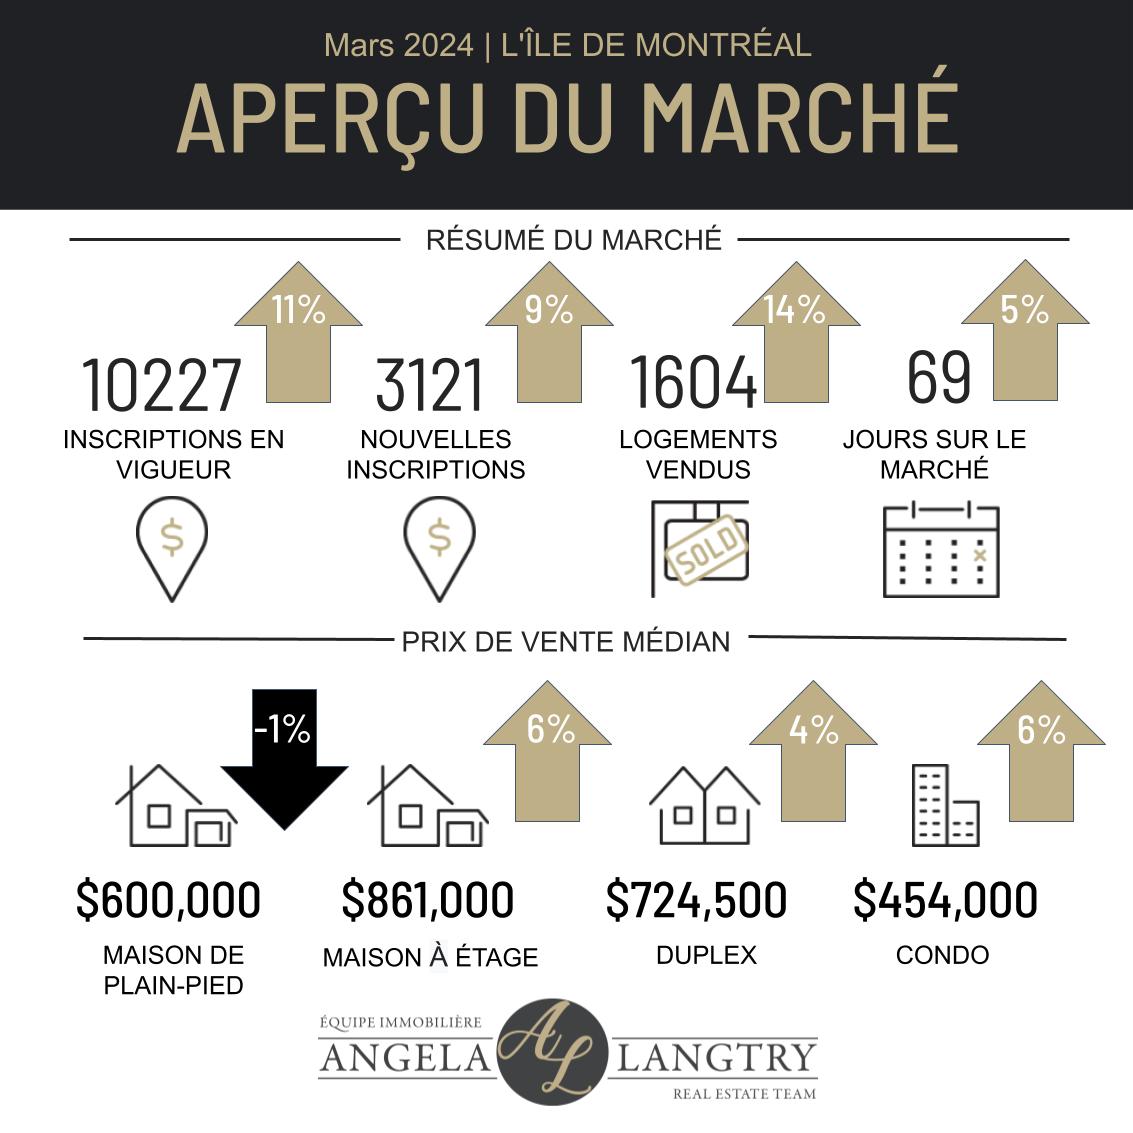 Statistiques du marché immobilier de Montréal

🏠 Mars 2024 🏠

Suivez-nous sur les médias sociaux pour des mises à jour mensuelles sur le marché immobilier de Montréal 👇
m.facebook.com/EquipeLangtryT…

☎️ 514.781.2121
📧 info@angelalangtry.ca
#montréal #mtl #marchéimmobilier